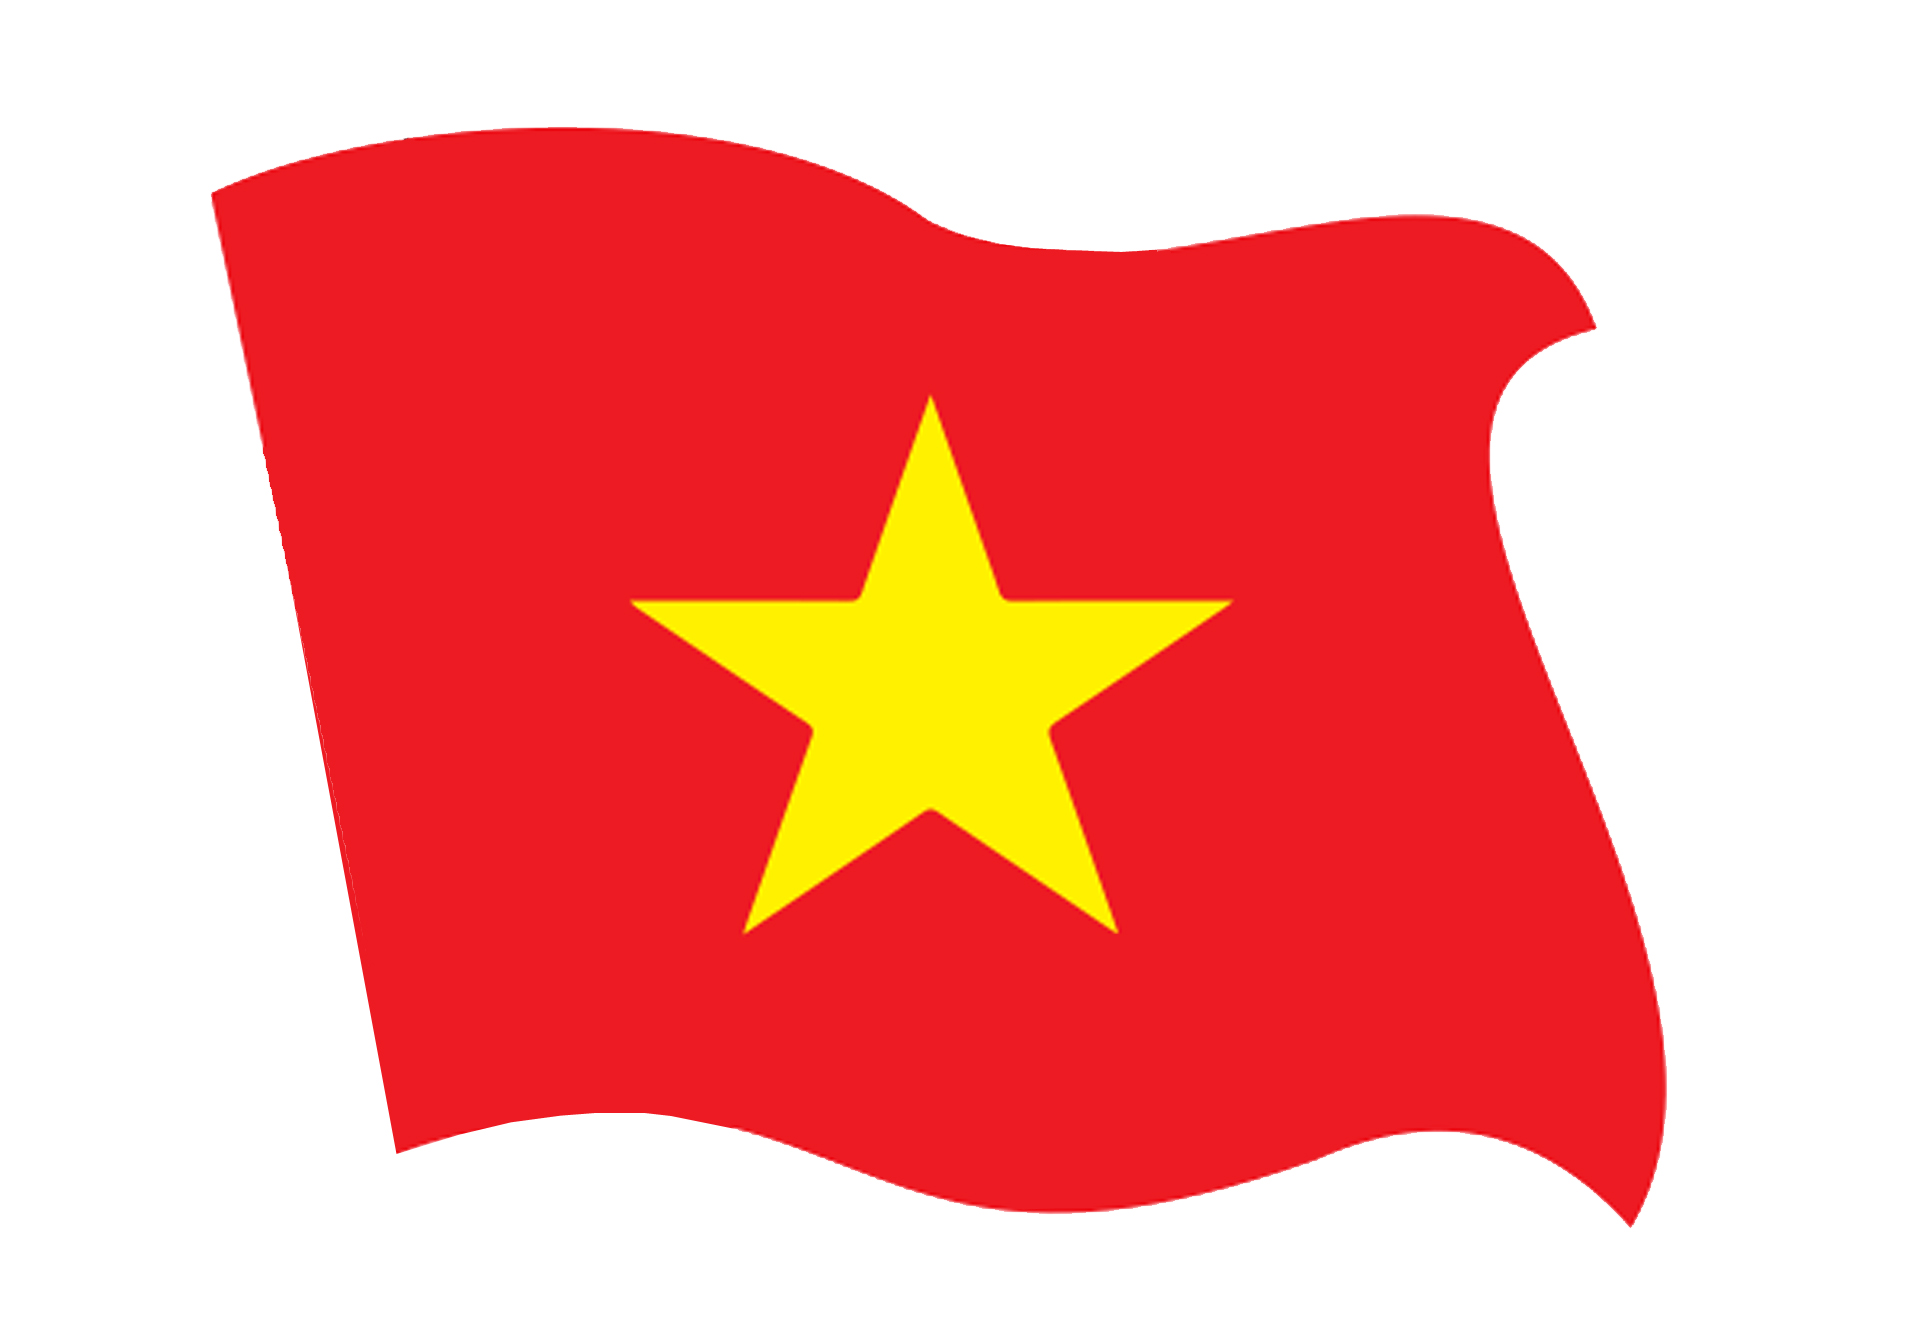 Cờ quốc kỳ Việt Nam giá rẻ
Cờ quốc kỳ Việt Nam giá rẻ là một lựa chọn hoàn hảo để biểu tỏ tình yêu thương và lòng trung thành với đất nước. Chúng tôi cung cấp các loại cờ quốc kỳ chất lượng tốt với giá cả phải chăng. Bạn sẽ không tìm thấy giá cạnh tranh hơn nữa để mua cờ quốc kỳ Việt Nam của chúng tôi. Đặt hàng ngay bây giờ và biến trang trí nhà bạn trở nên rực rỡ hơn bao giờ hết.